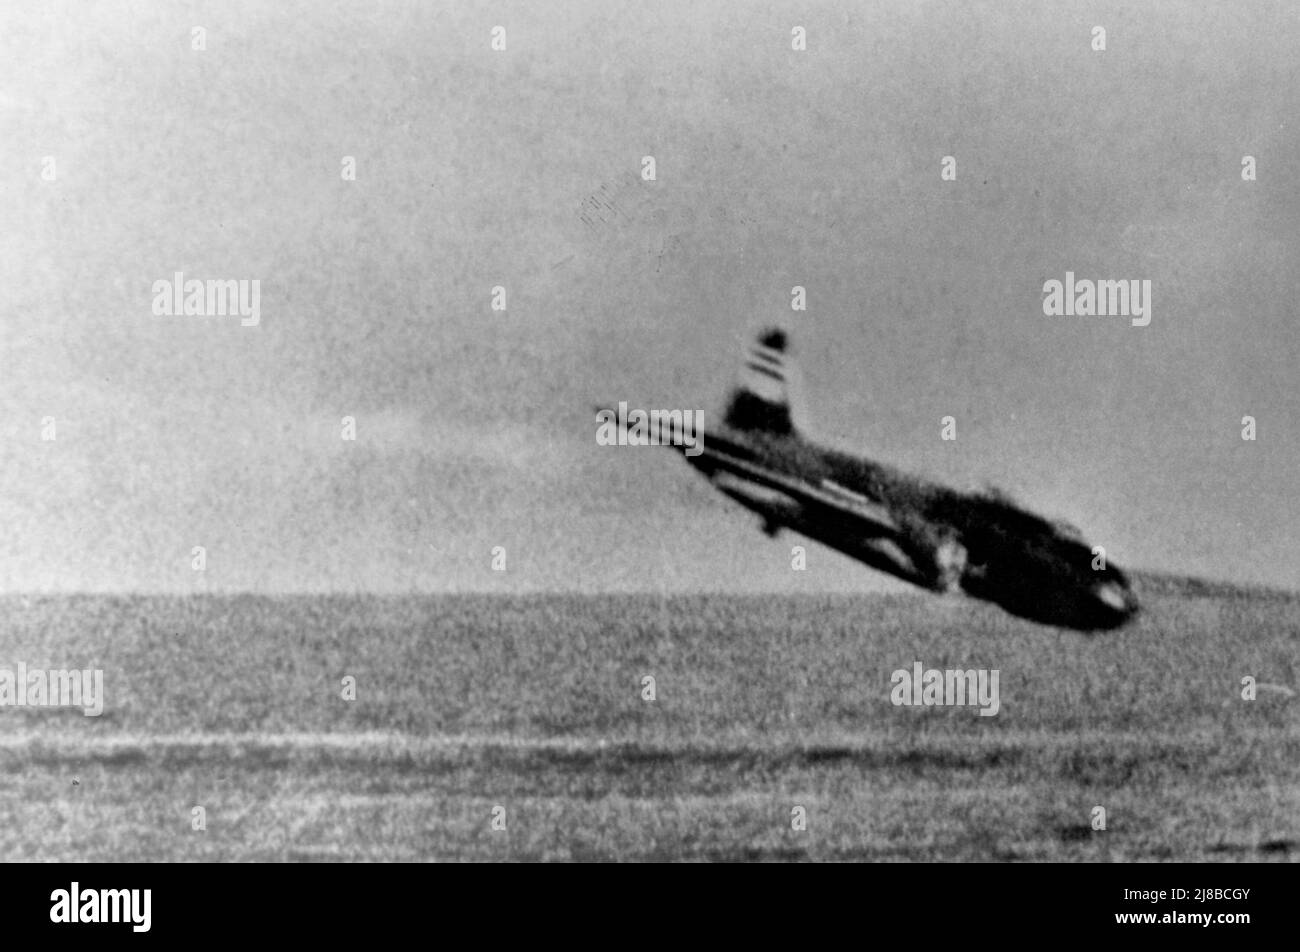 Un bombardier « Betty » de la Marine impériale japonaise Mitsubishi G4M plonge dans l'eau après avoir été abattu lors d'un engagement avec la Marine américaine Grumman F4F-3 Wildcat Fighters de l'escadron de combat VF-3 défendant le porte-avions USS Lexington (CV-2) au large de Rabaul, en Nouvelle-Bretagne, en février 1942. Banque D'Images